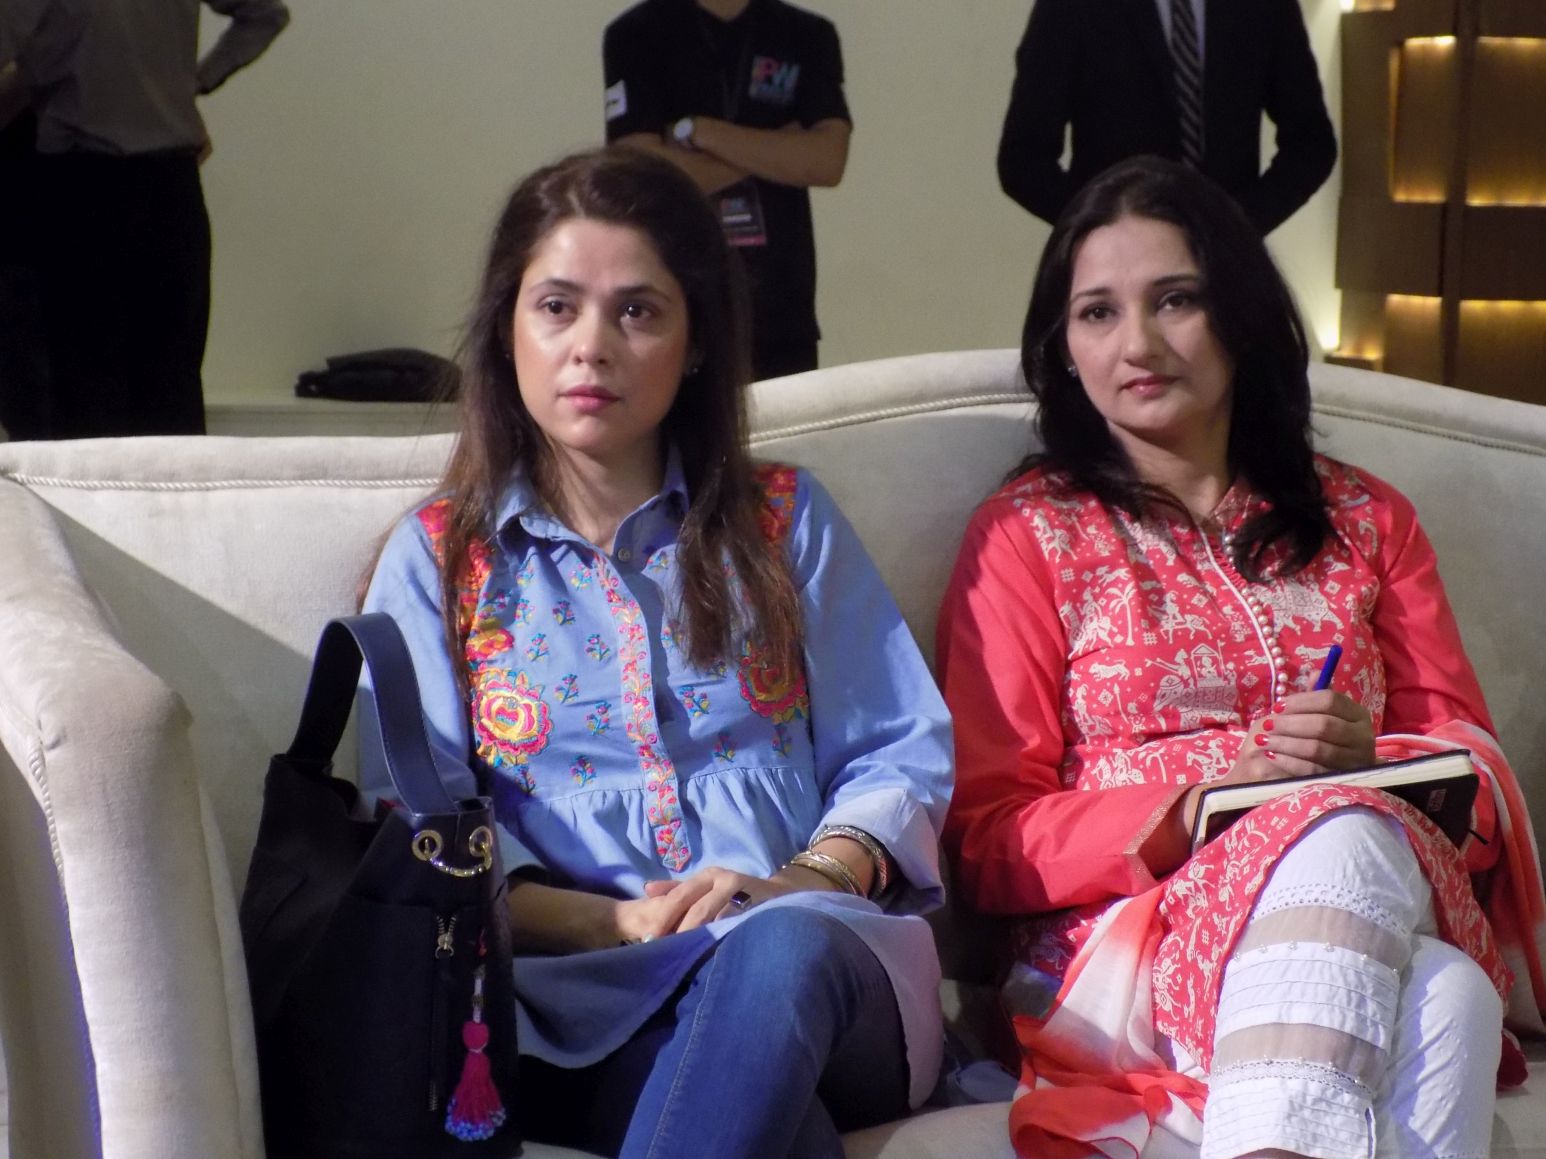 Pakistan Women Festival 2017